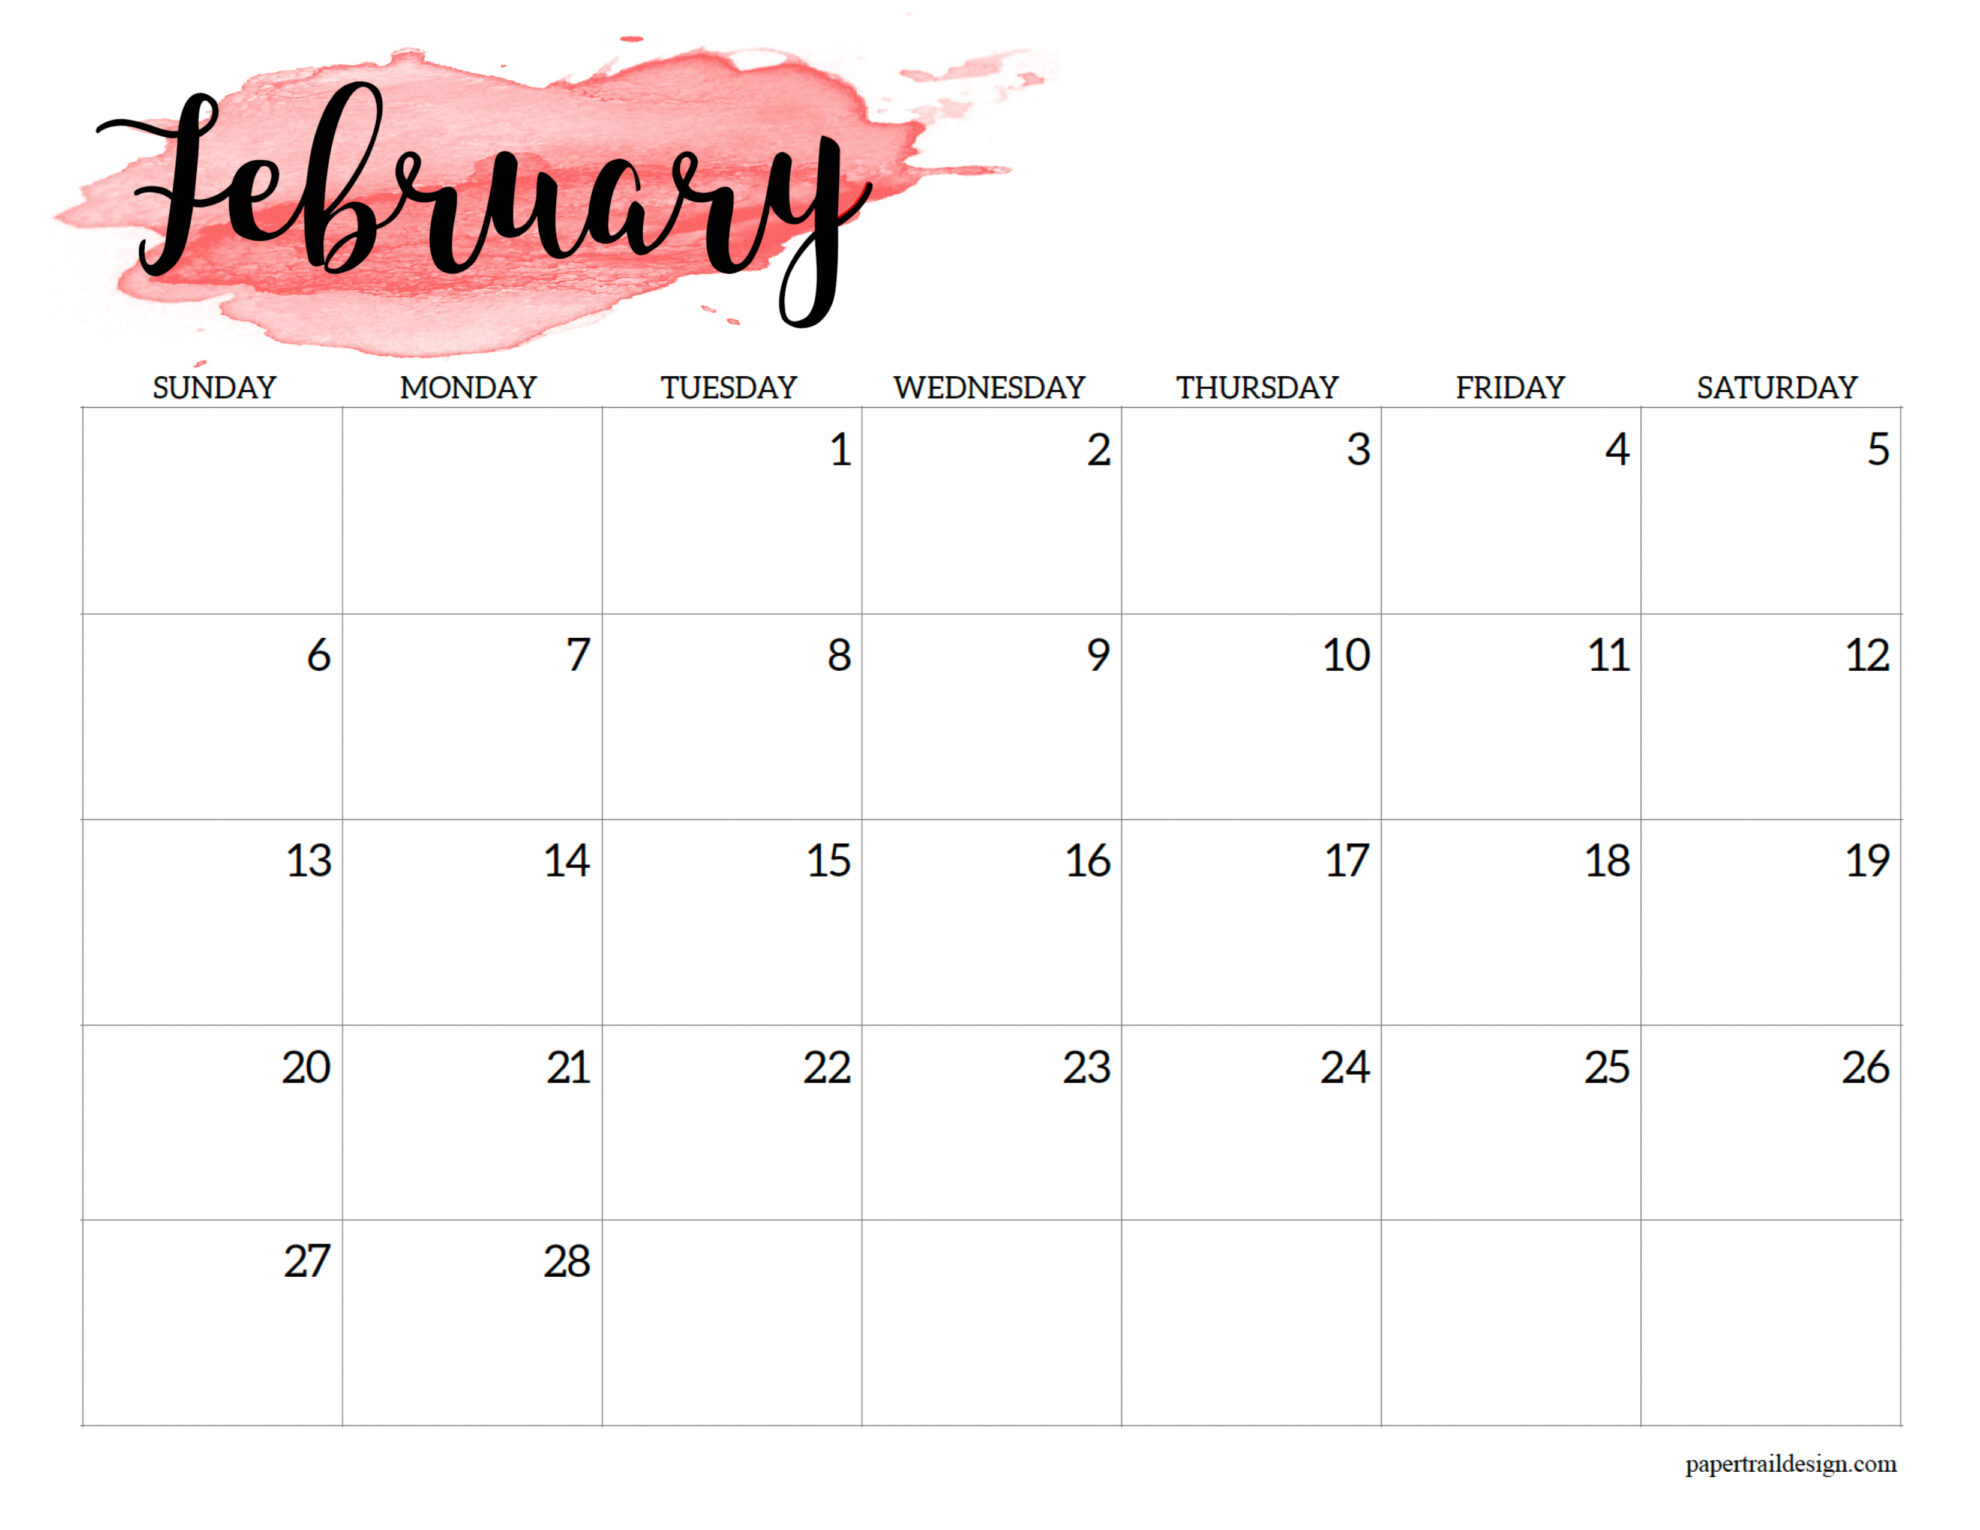 Feb Calendar 2022 Printable 2022 Calendar Printable - Watercolor - Paper Trail Design